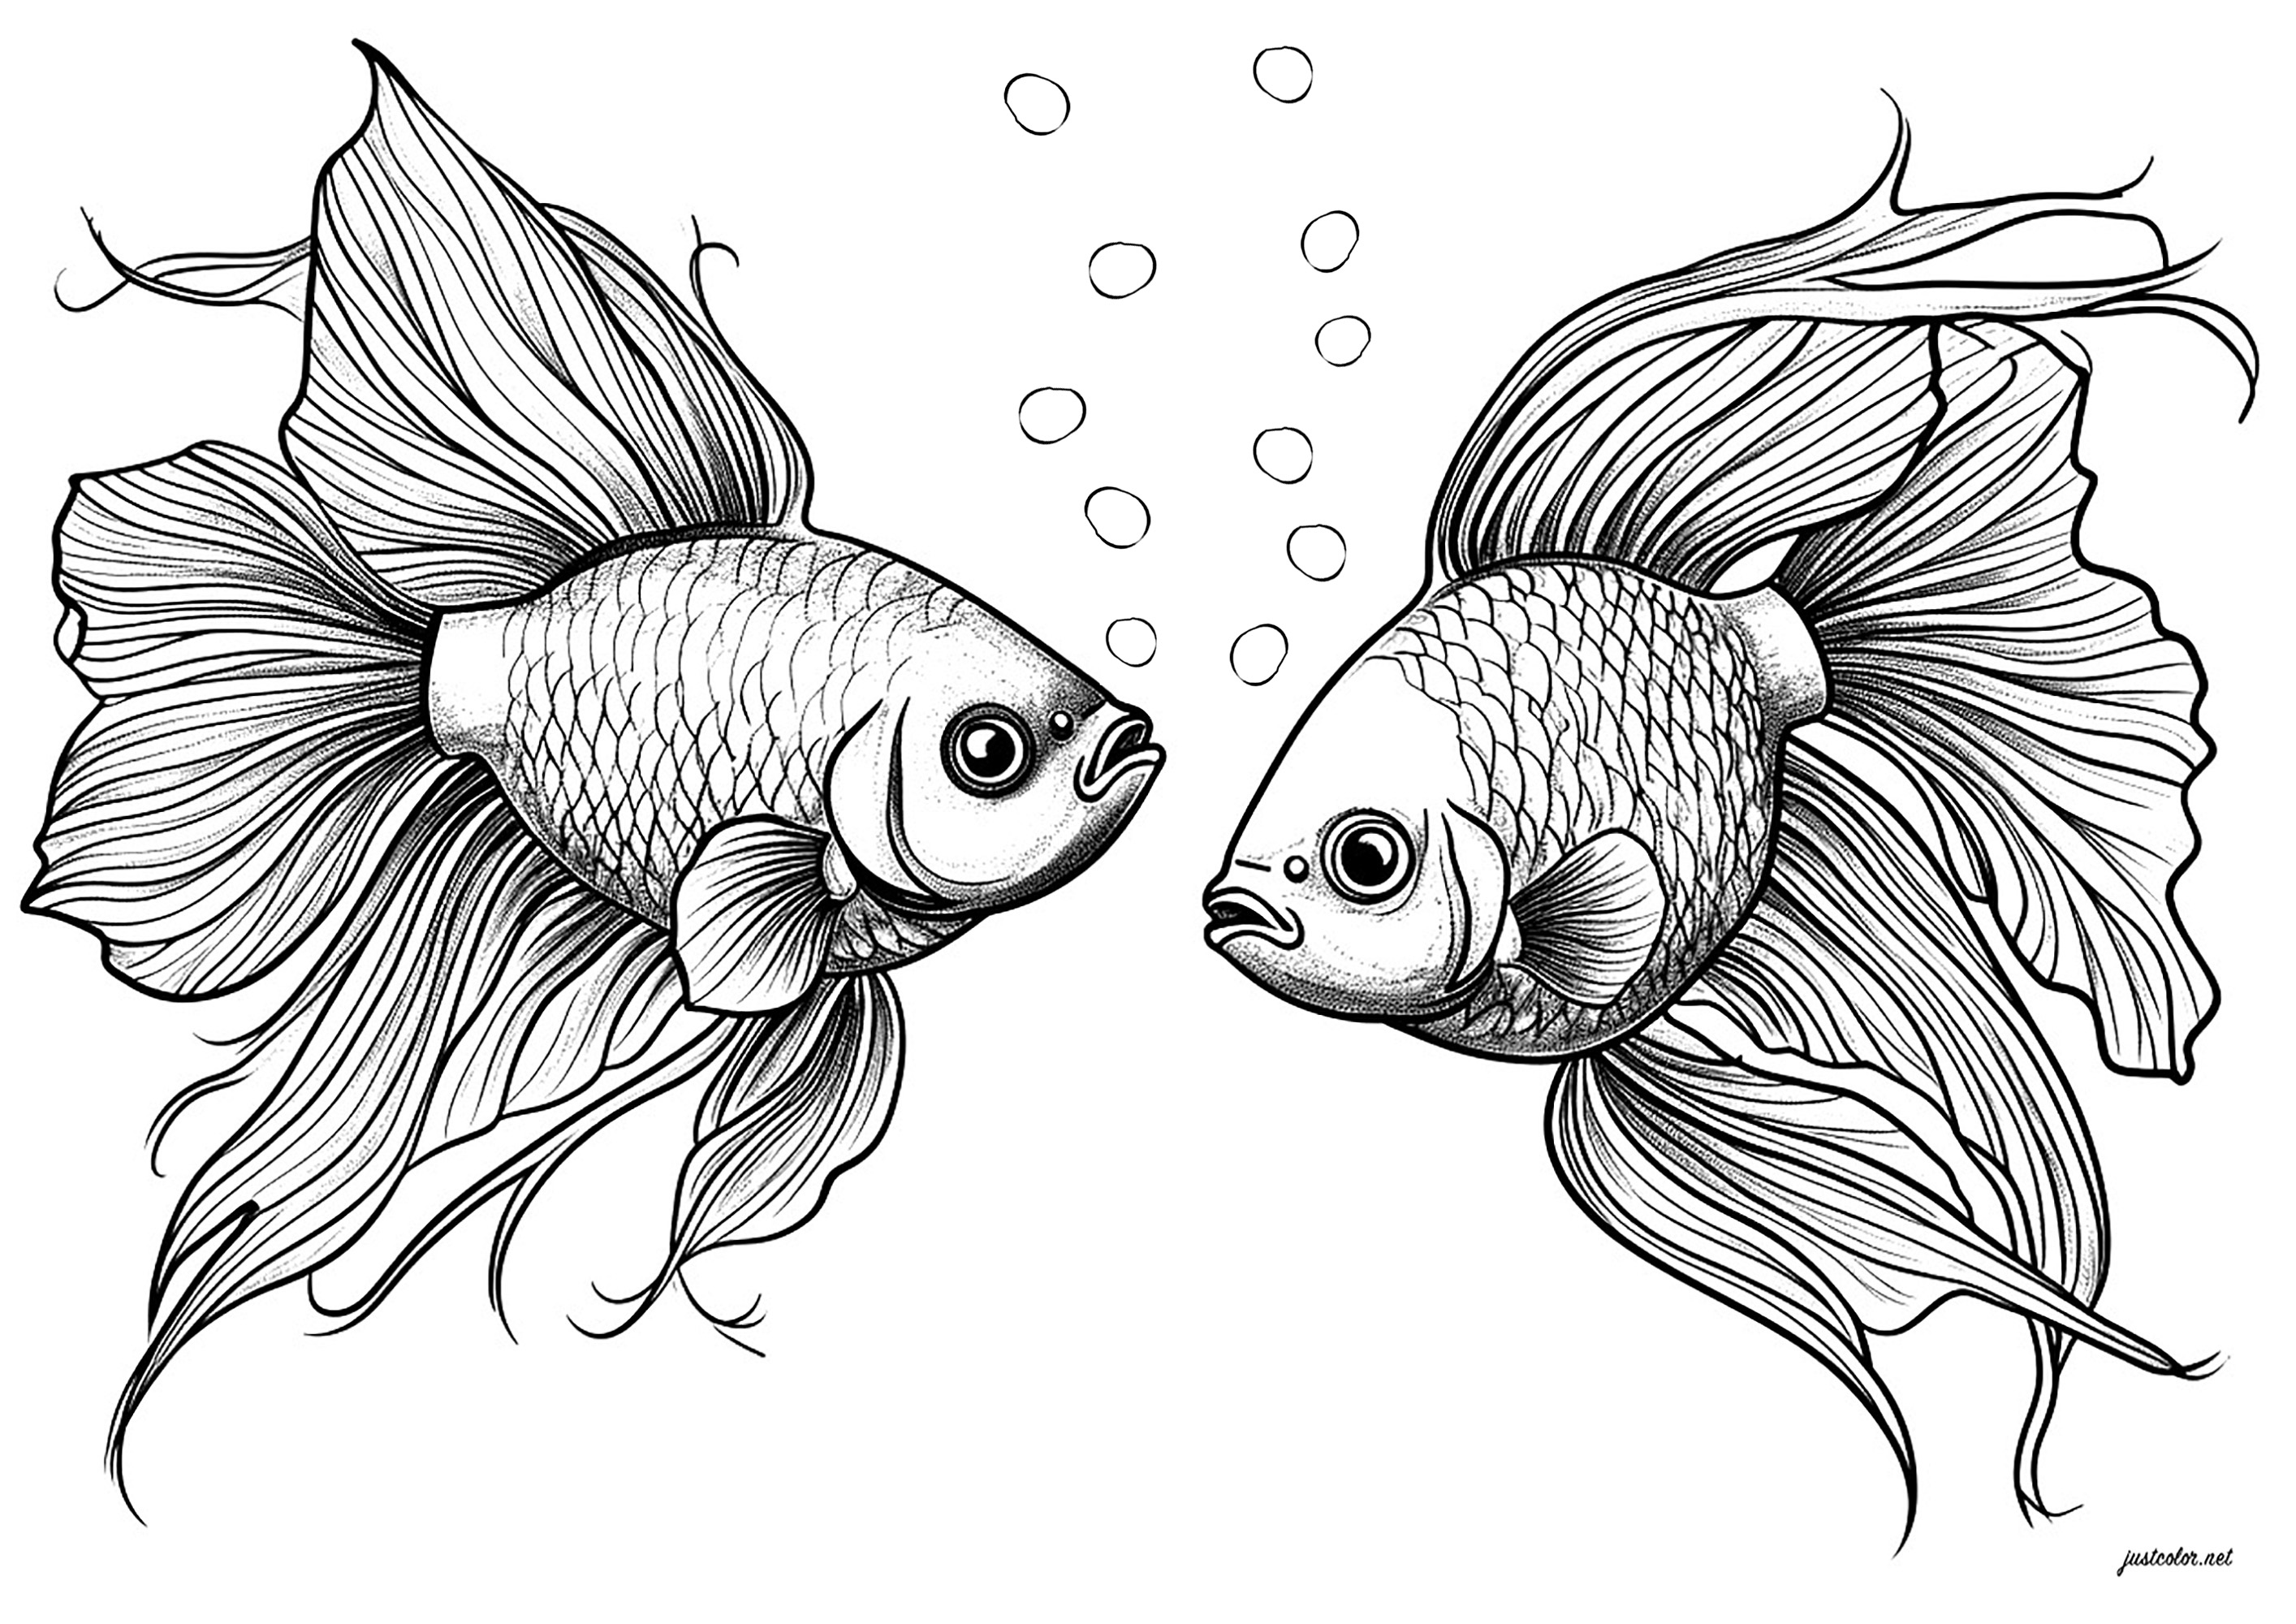 Deux poissons sublimes, face à face